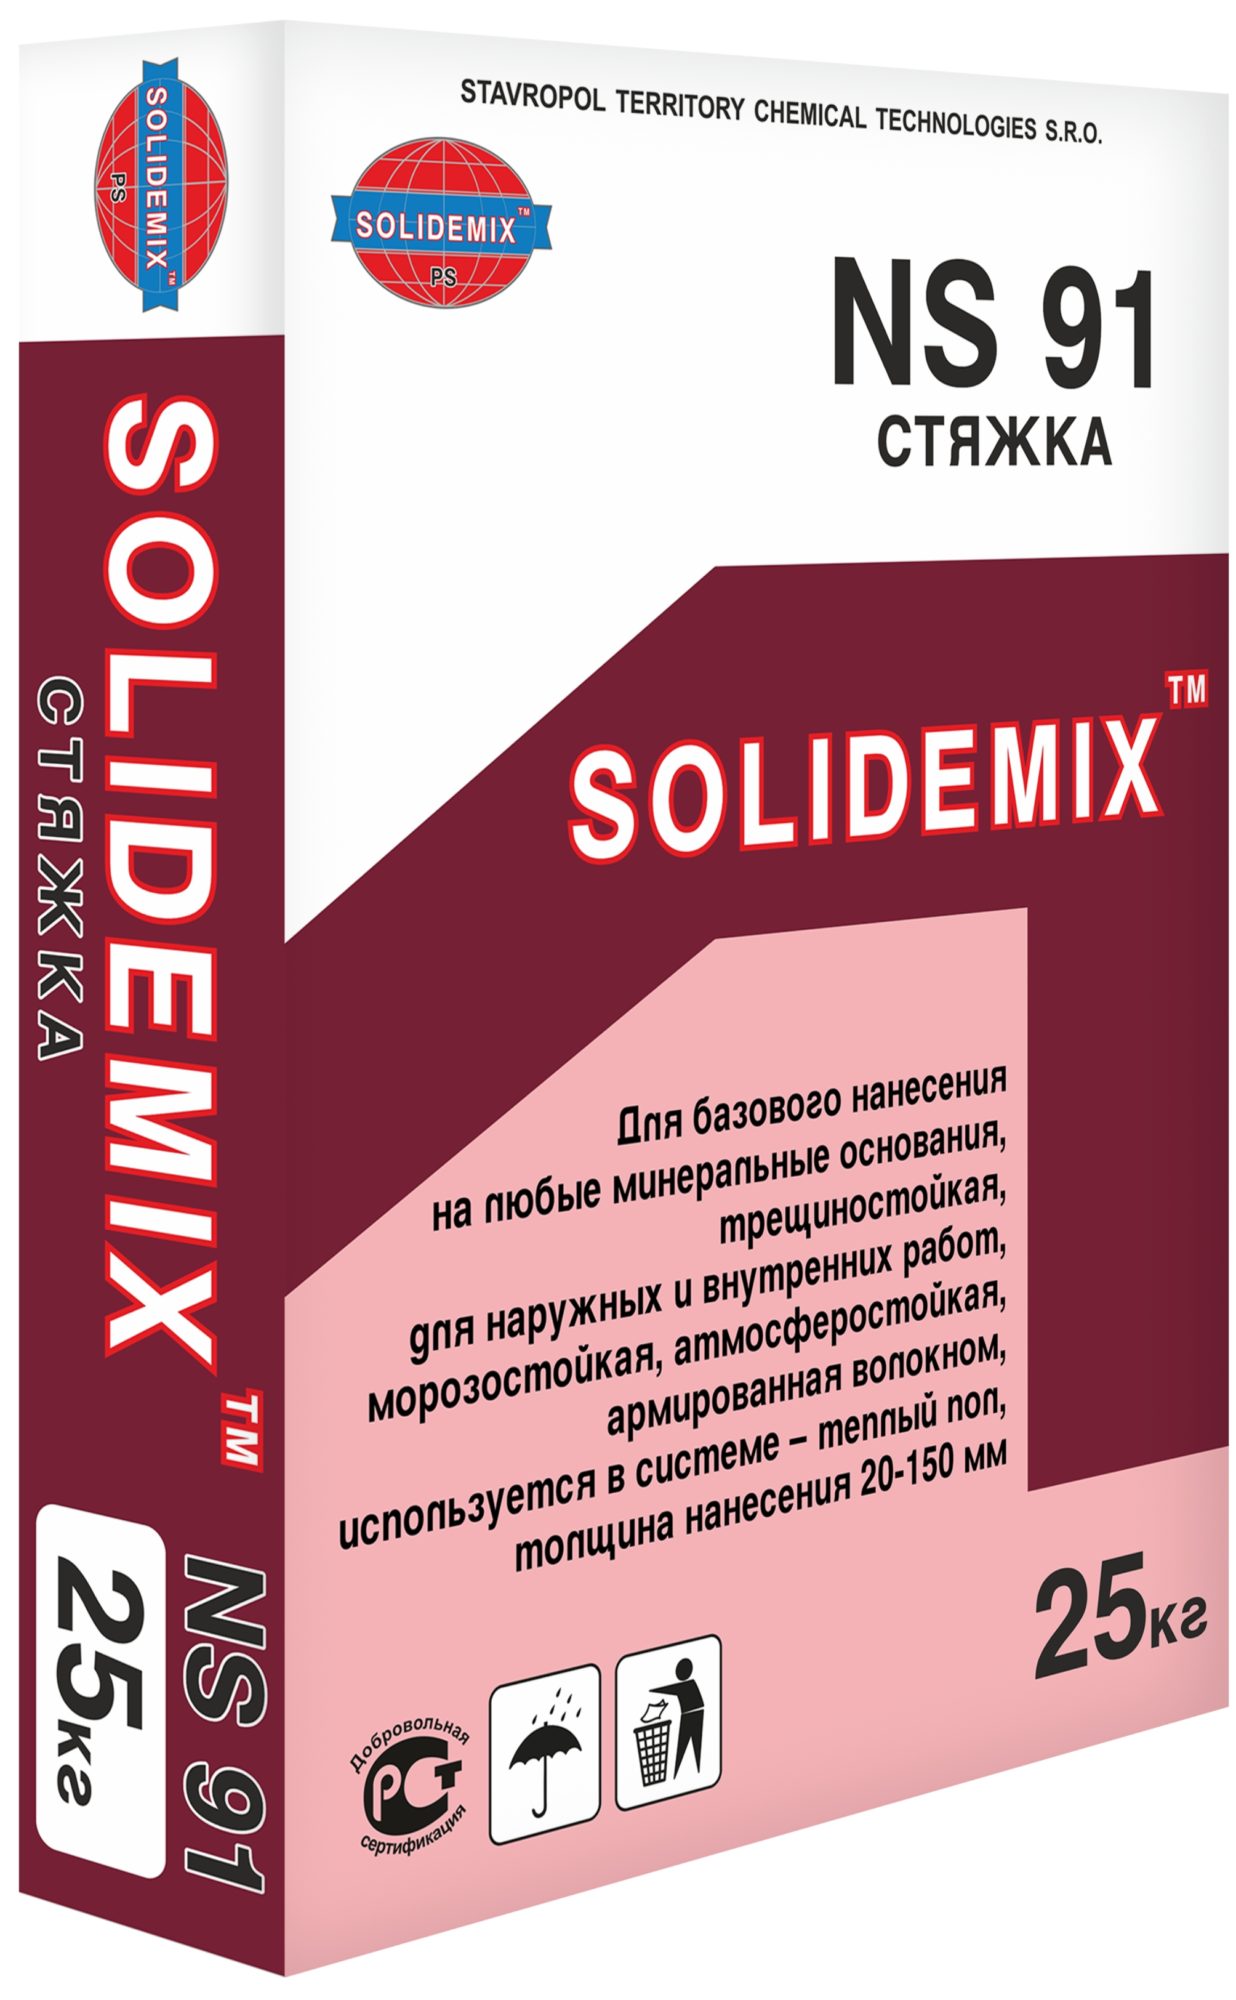 Купить Стяжка для теплого пола цементно-песчанная «SLOLIDEMIX NS 91» от SOLIDEMIX